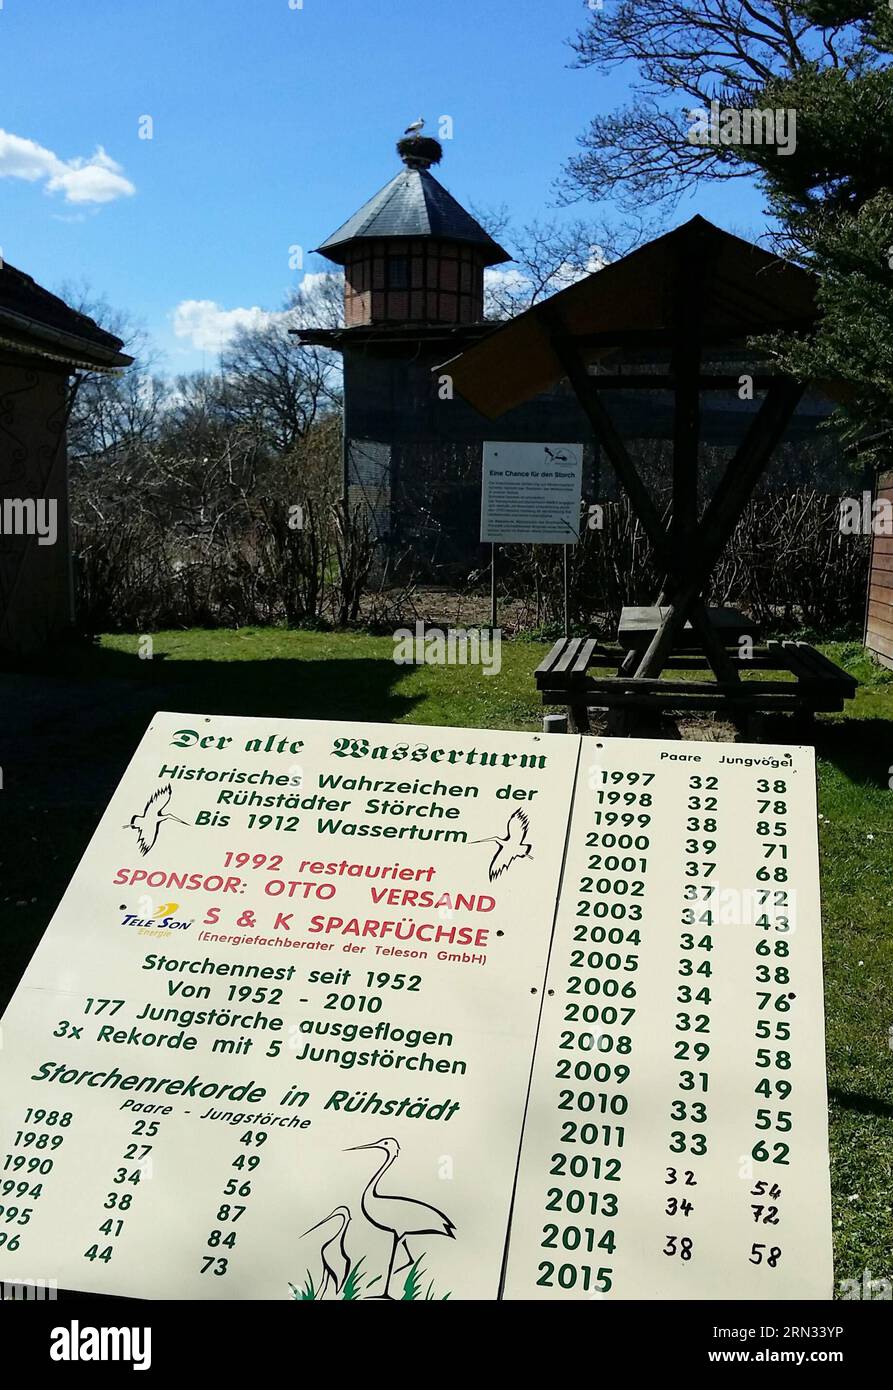 AKTUELLES ZEITGESCHEHEN Storchendorf Rühstädt in Brandebourg 150406 RUESTAEDT, Une pancarte enregistrant le nombre de cigogne blanche en visite est vue dans le village de Ruestaedt, Etat de Brandebourg, Allemagne, le 5 avril 2015. Le village était célèbre pour la visite annuelle de la cigogne blanche. Germanyruestaedtwhite STORK BanxWei PUBLICATIONxNOTxINxCHN Actualités événements Stork Village Melbourne dans le Brandebourg une pancarte enregistrement du nombre de visites de cigogne blanche EST Lacs dans le Village Brandebourg Etat Allemagne avril 5 2015 le Village ce qui est célèbre pour la visite annuelle de cigogne blanche PUBLICATIONxNOT Banque D'Images